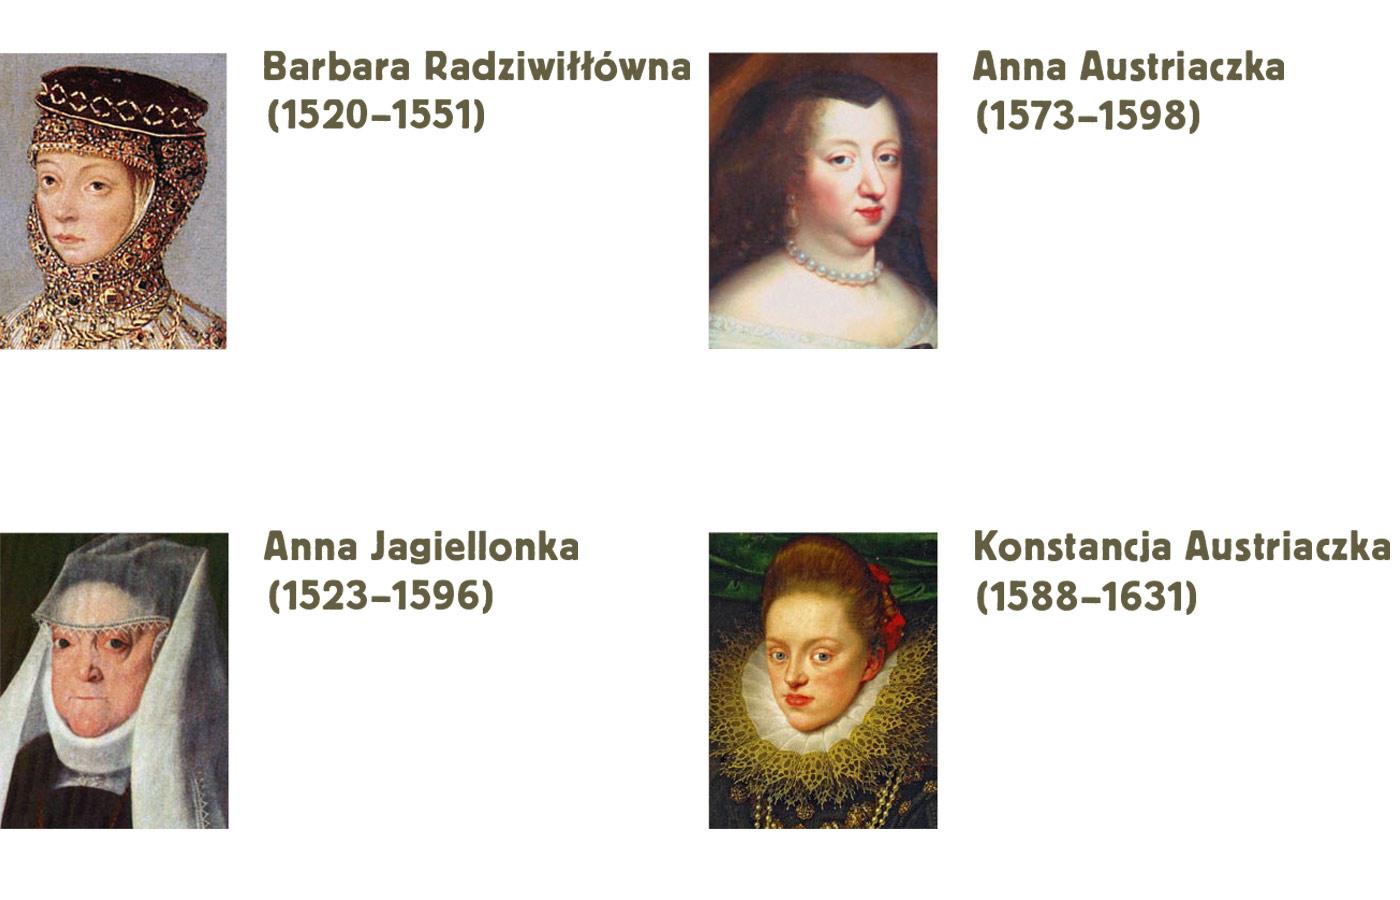 Barbara Radziwiłłówna, Anna Austriaczka, Anna Jagiellonka, Konstancja Austriaczka.